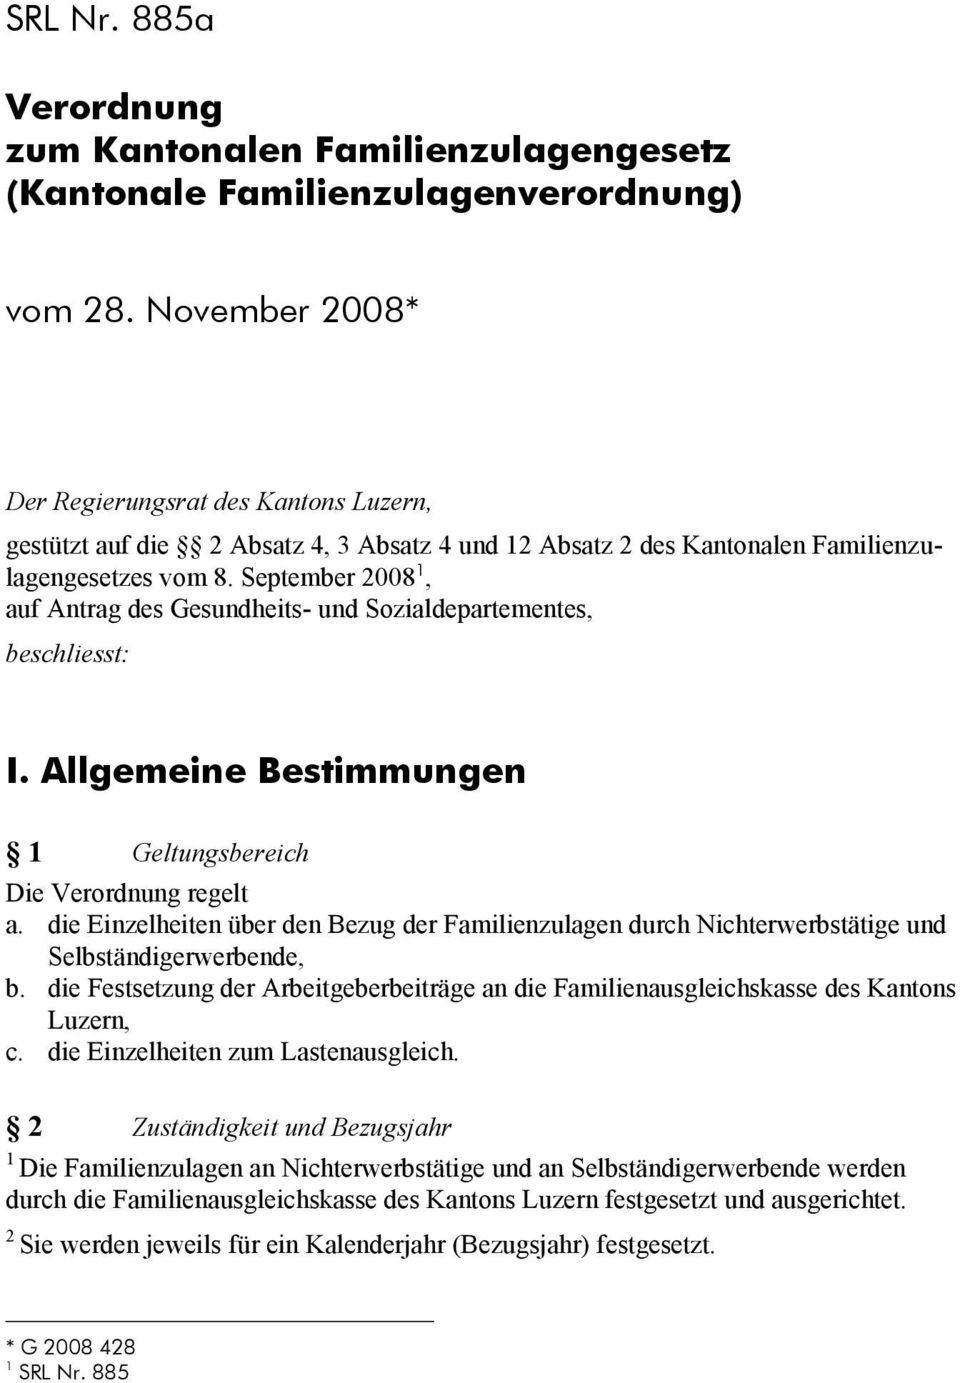 September 008, auf Antrag des Gesundheits- und Sozialdepartementes, beschliesst: I. Allgemeine Bestimmungen Geltungsbereich Die Verordnung regelt a.